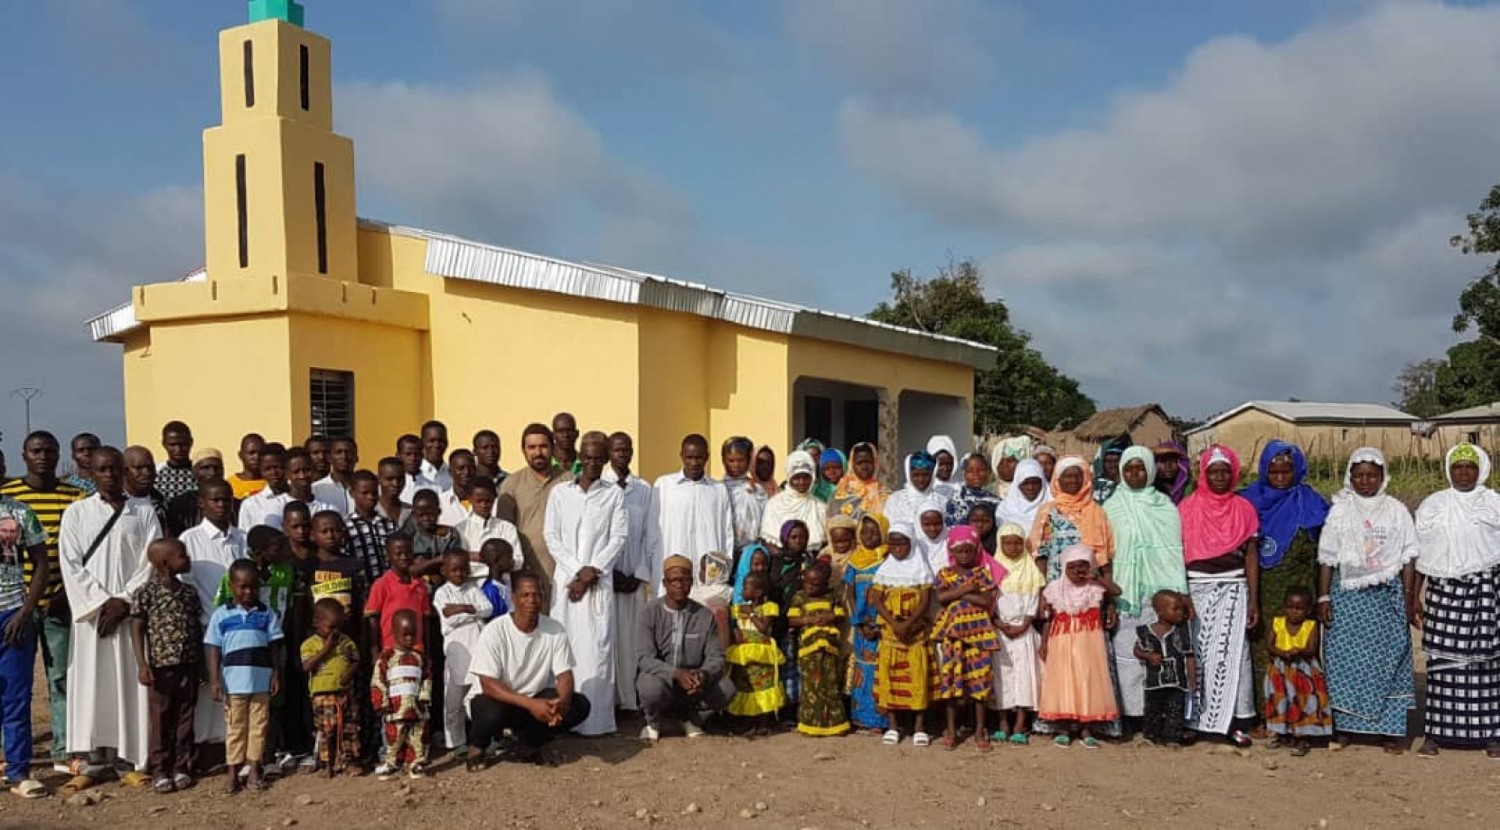 Côte d'Ivoire : Otabounavogo, les effets sociaux et spirituels de la Tabaski expliqués aux habitants par la communauté Ahmadiyya